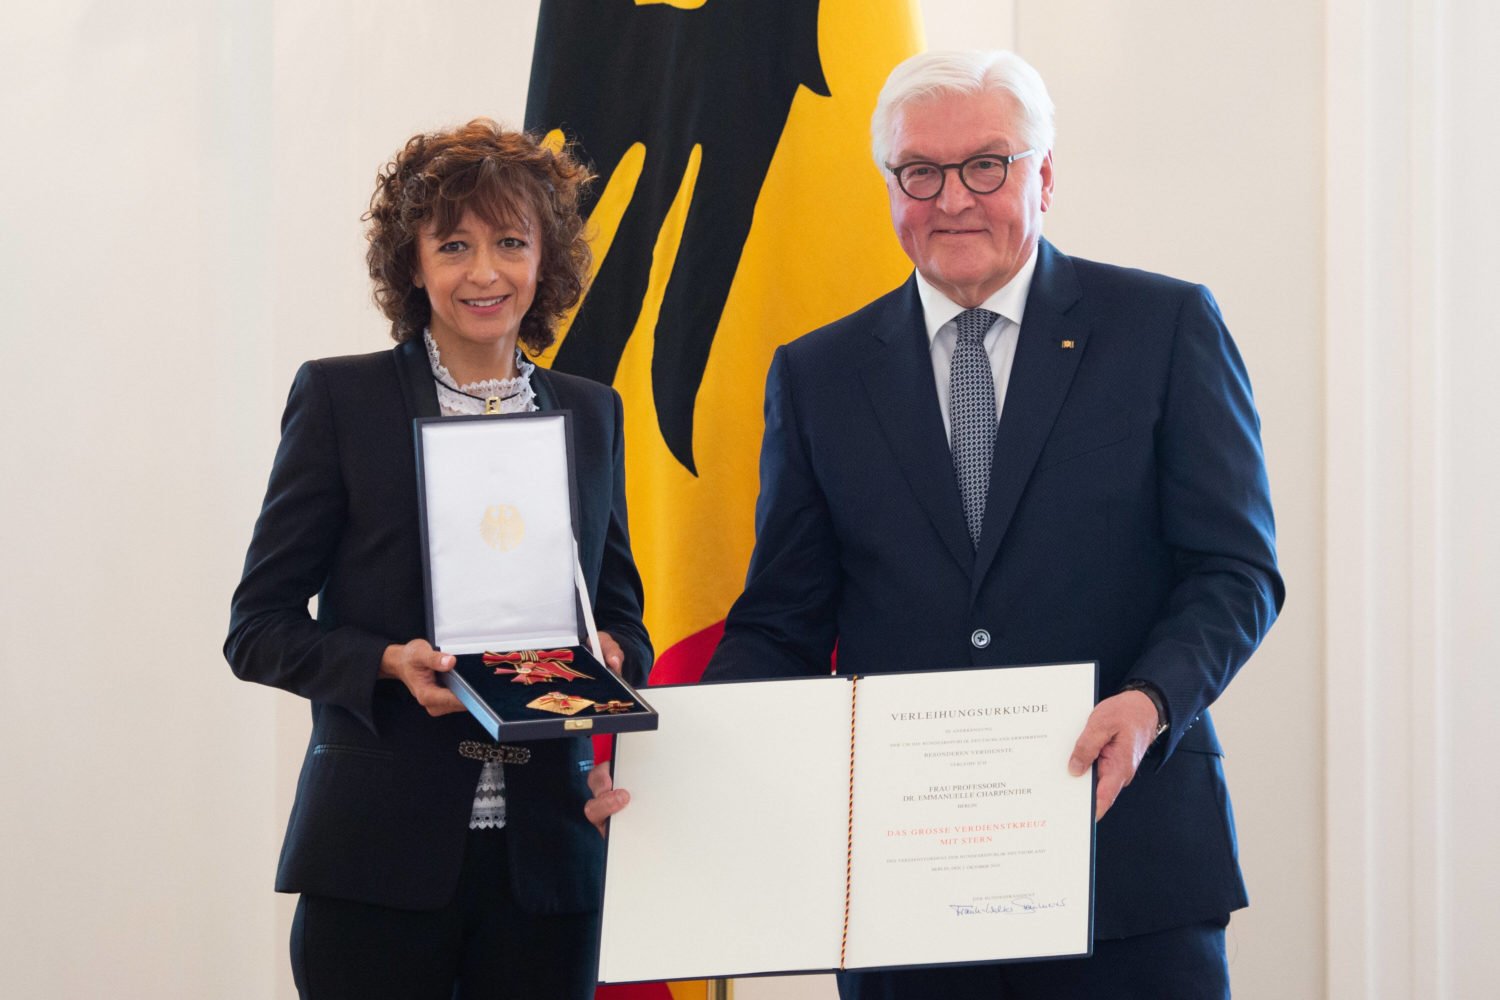 Emmanuelle Charpentier bei der Verleihung des Verdienstordens am 02.10.2019 durch Bundespräsident Frank Walter Steinmeier. 